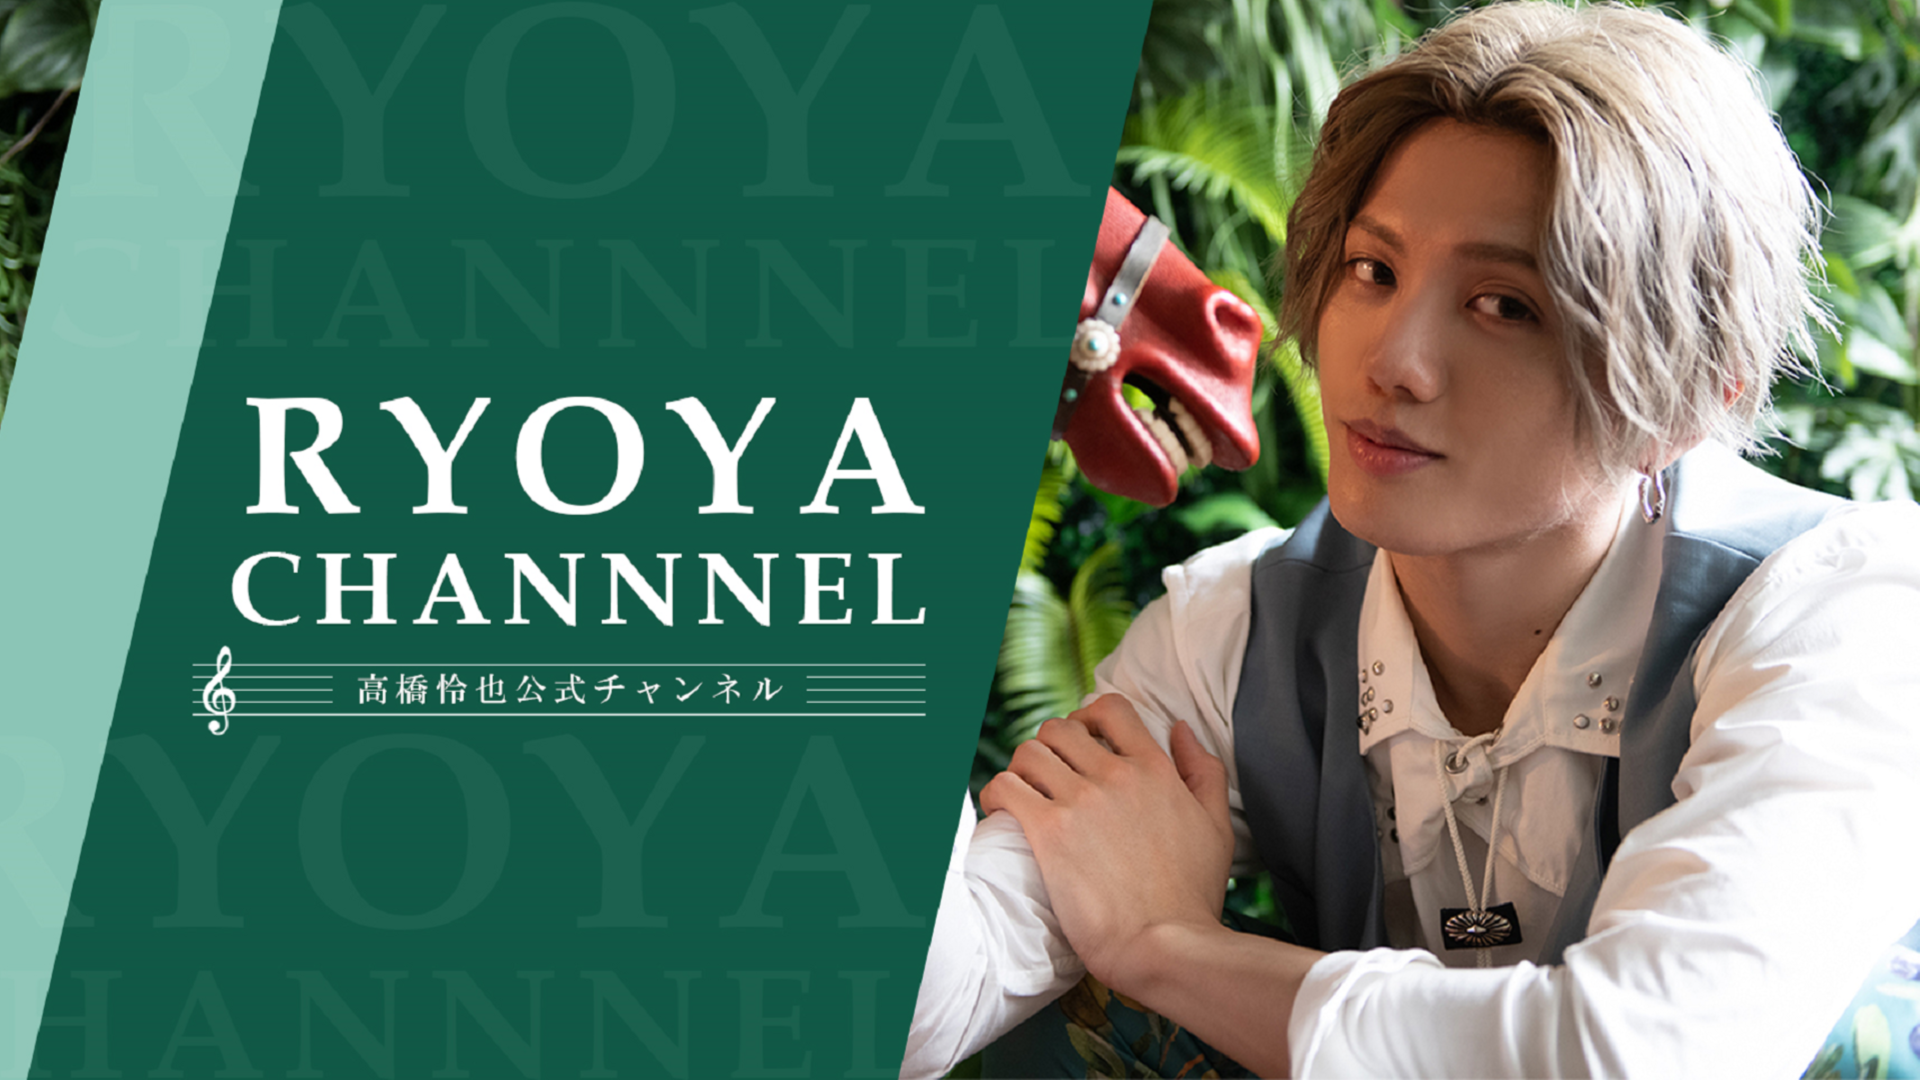 高橋怜也公式チャンネル「RYOYA CHANNEL」